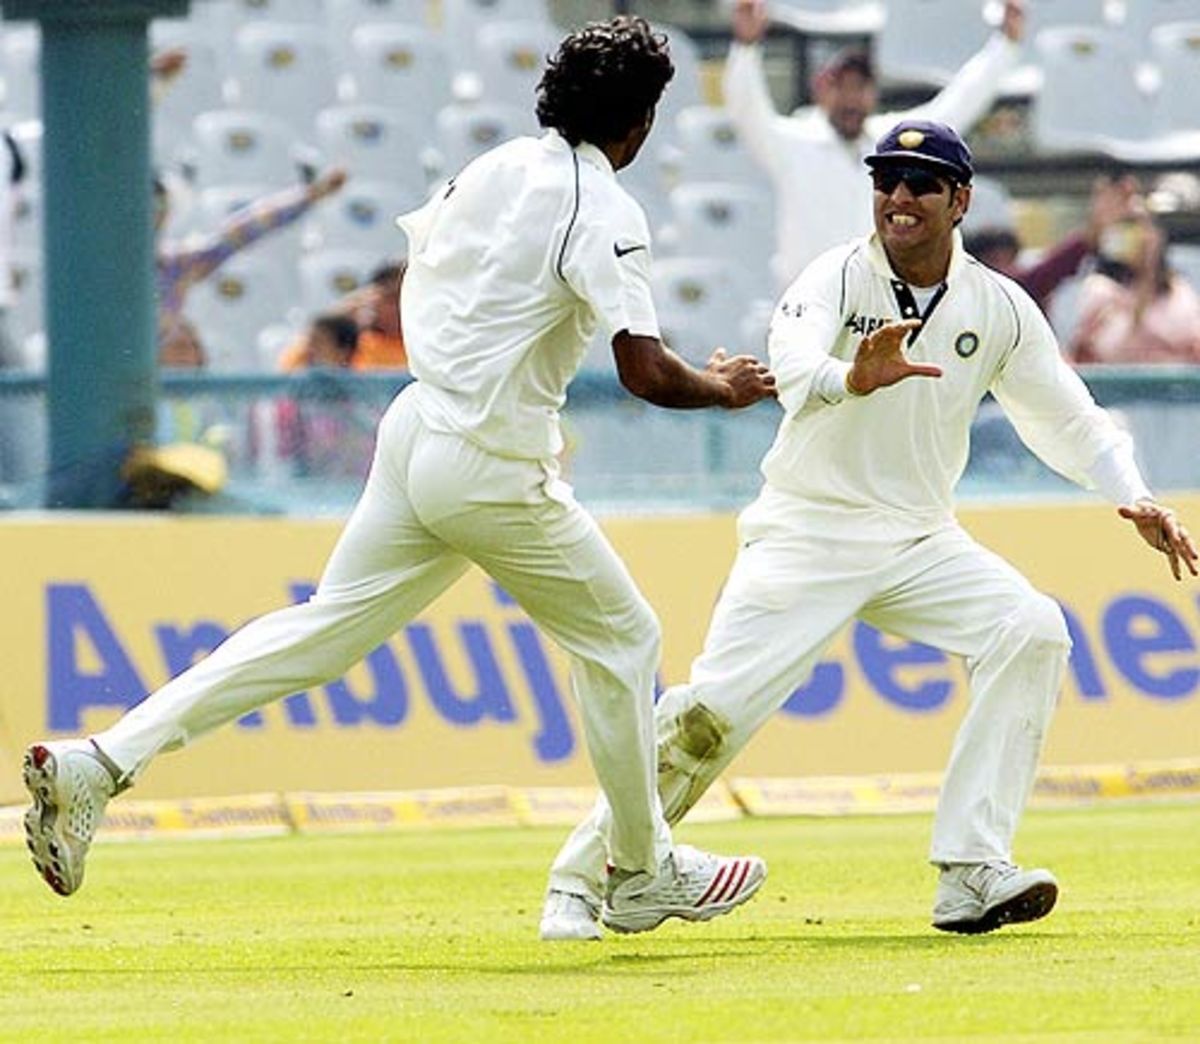 2006 में मोहाली में इंग्लैंड के खिलाफ मैच के दौरान मुनाफ और युवराज एक विकेट का जश्न मनाते हुए